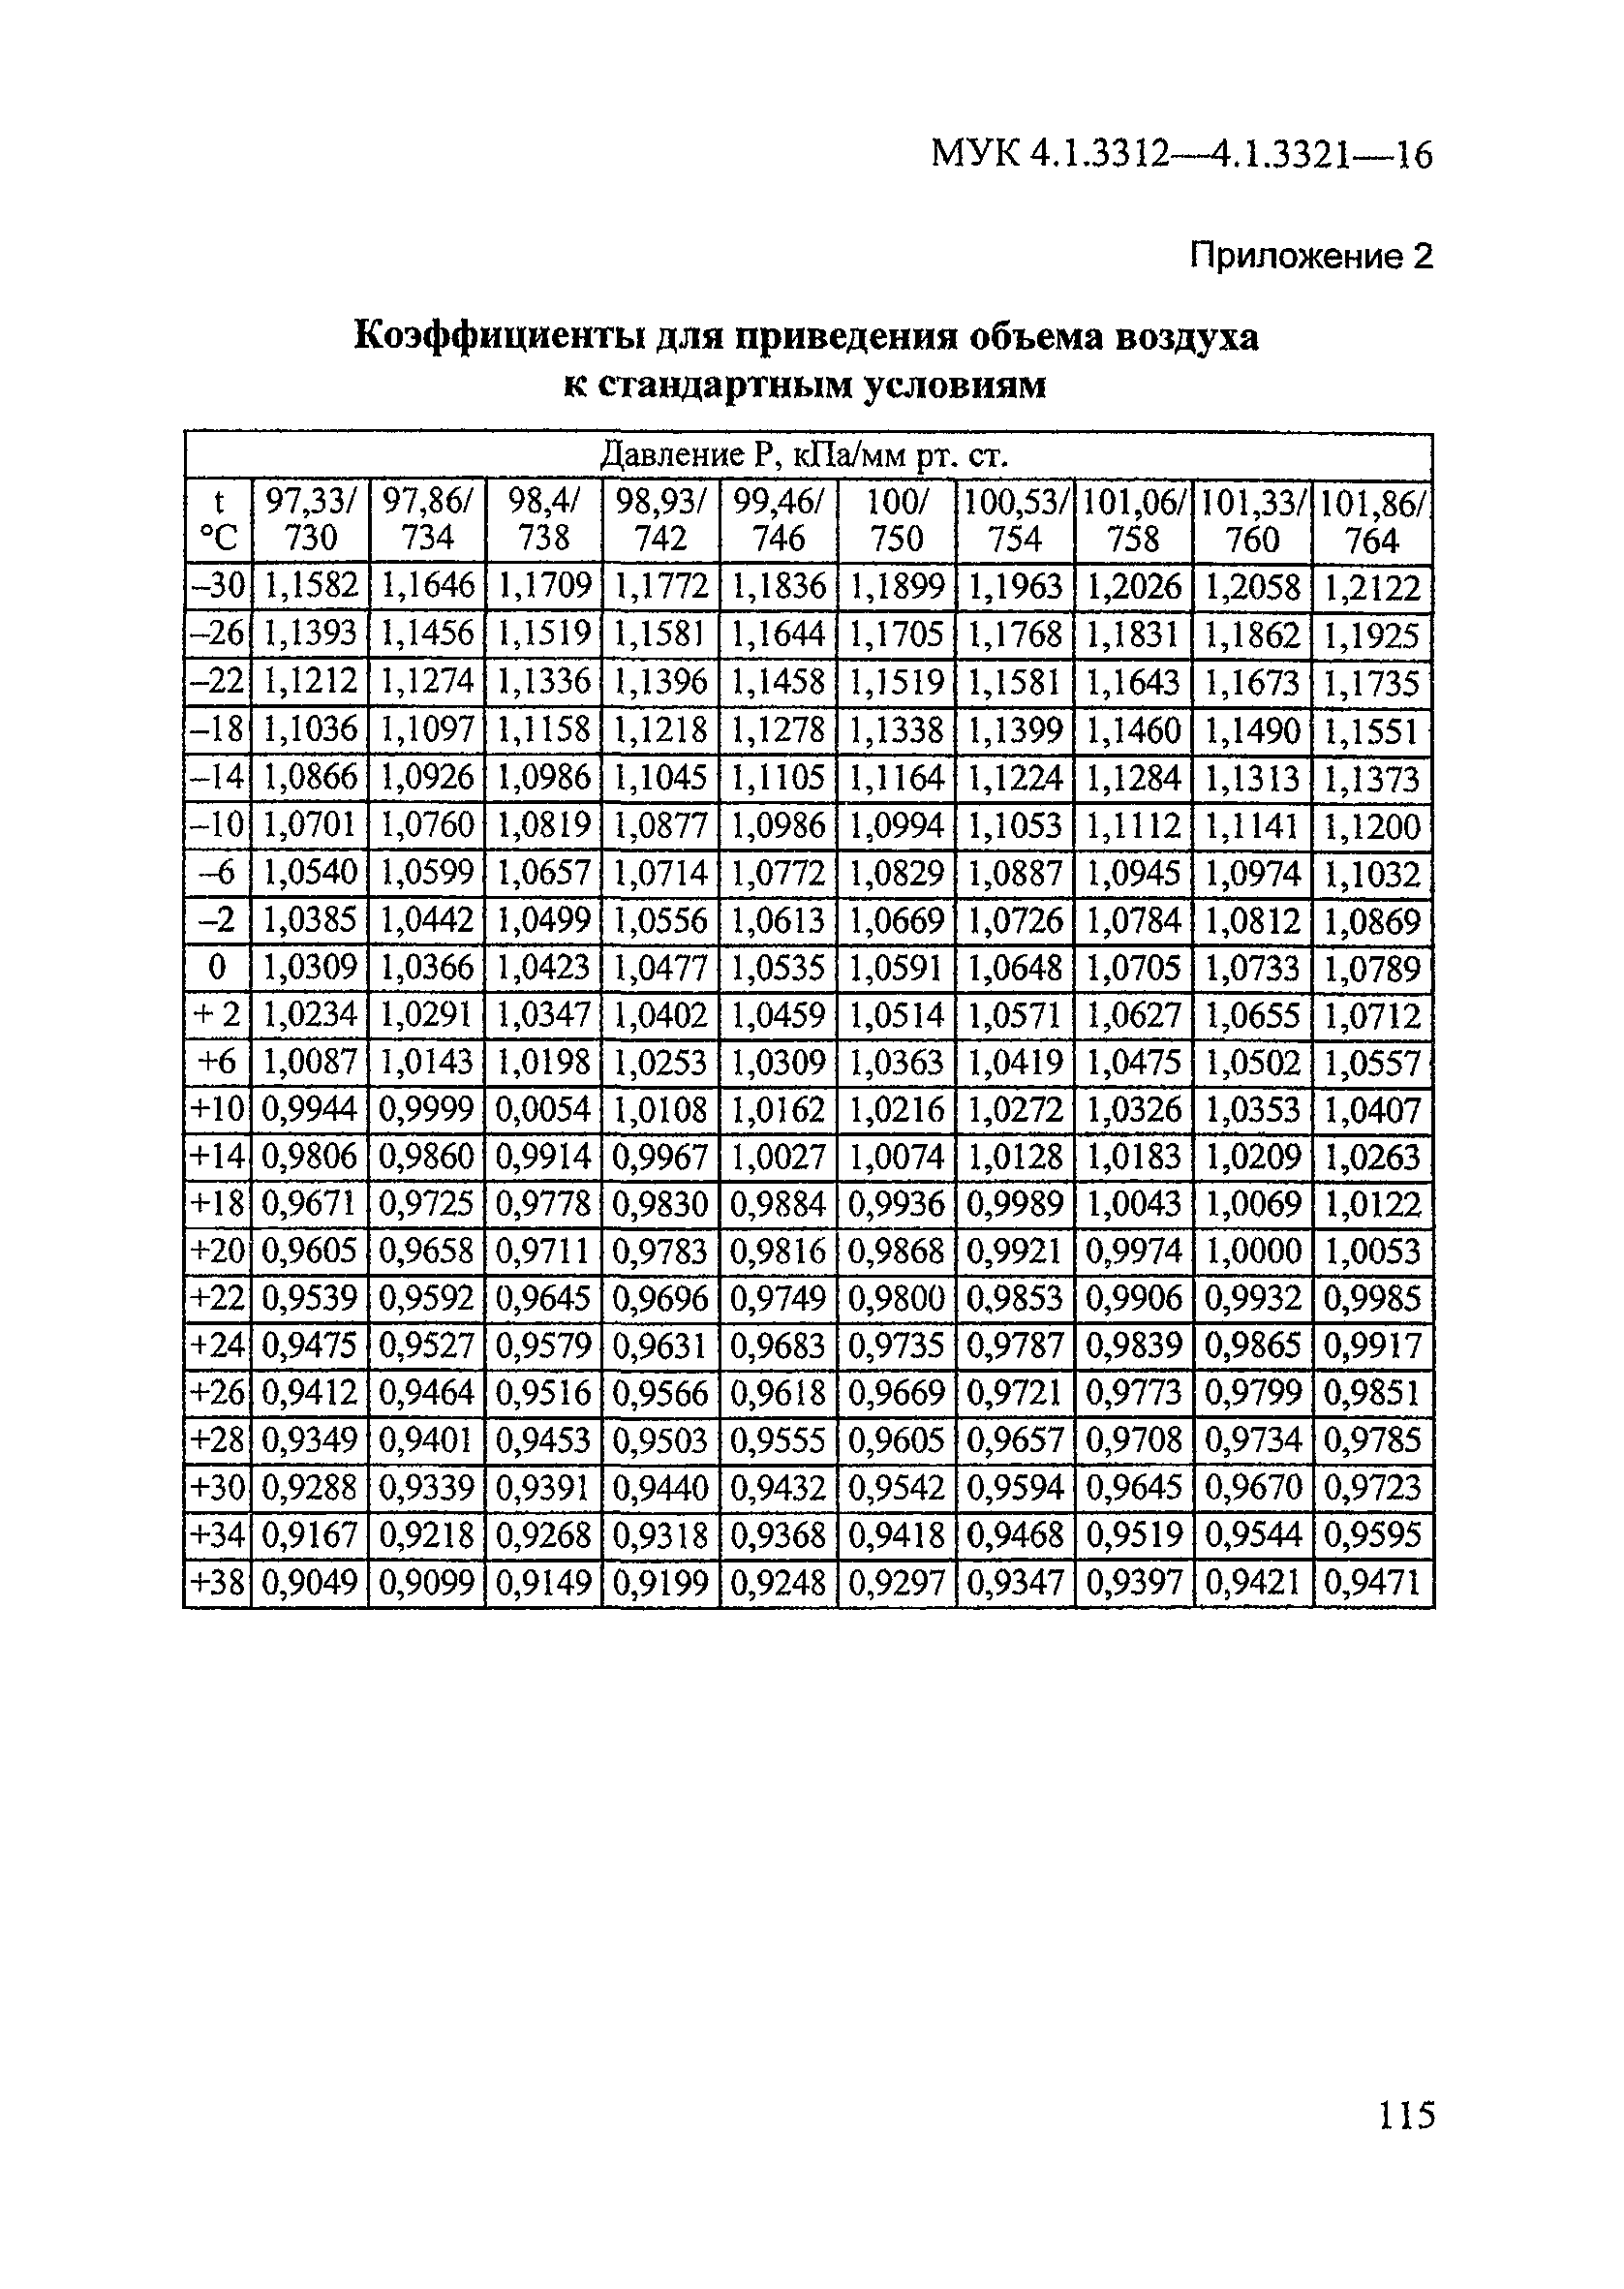 МУК 4.1.3312-15